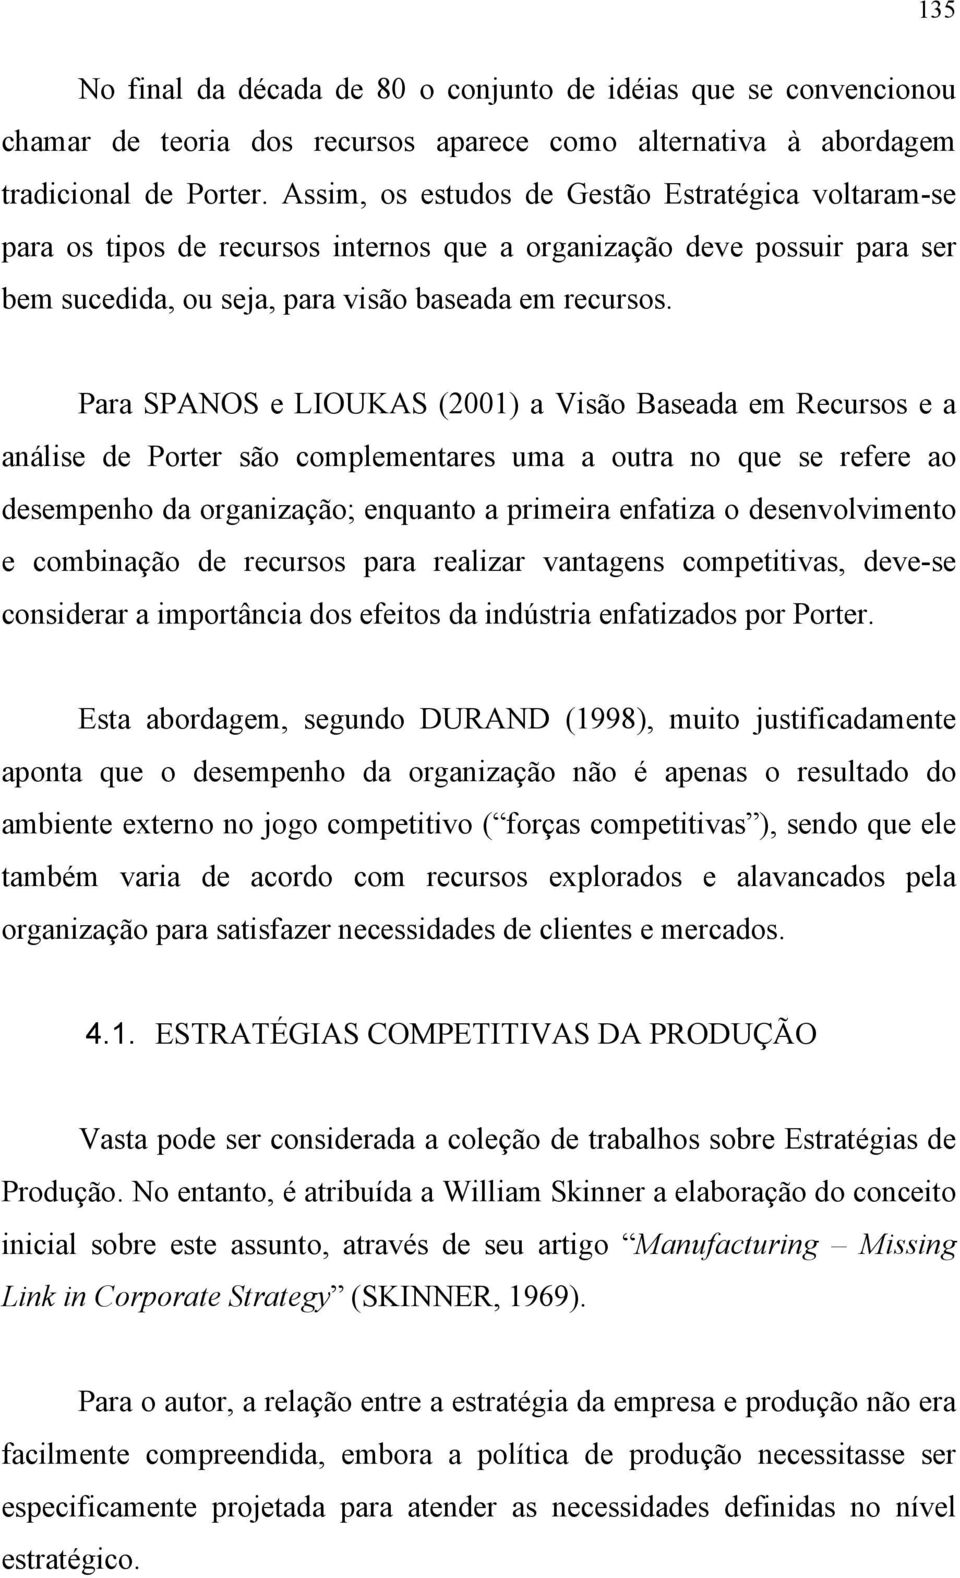 Para SPANOS e LIOUKAS (2001) a Visão Baseada em Recursos e a análise de Porter são complementares uma a outra no que se refere ao desempenho da organização; enquanto a primeira enfatiza o